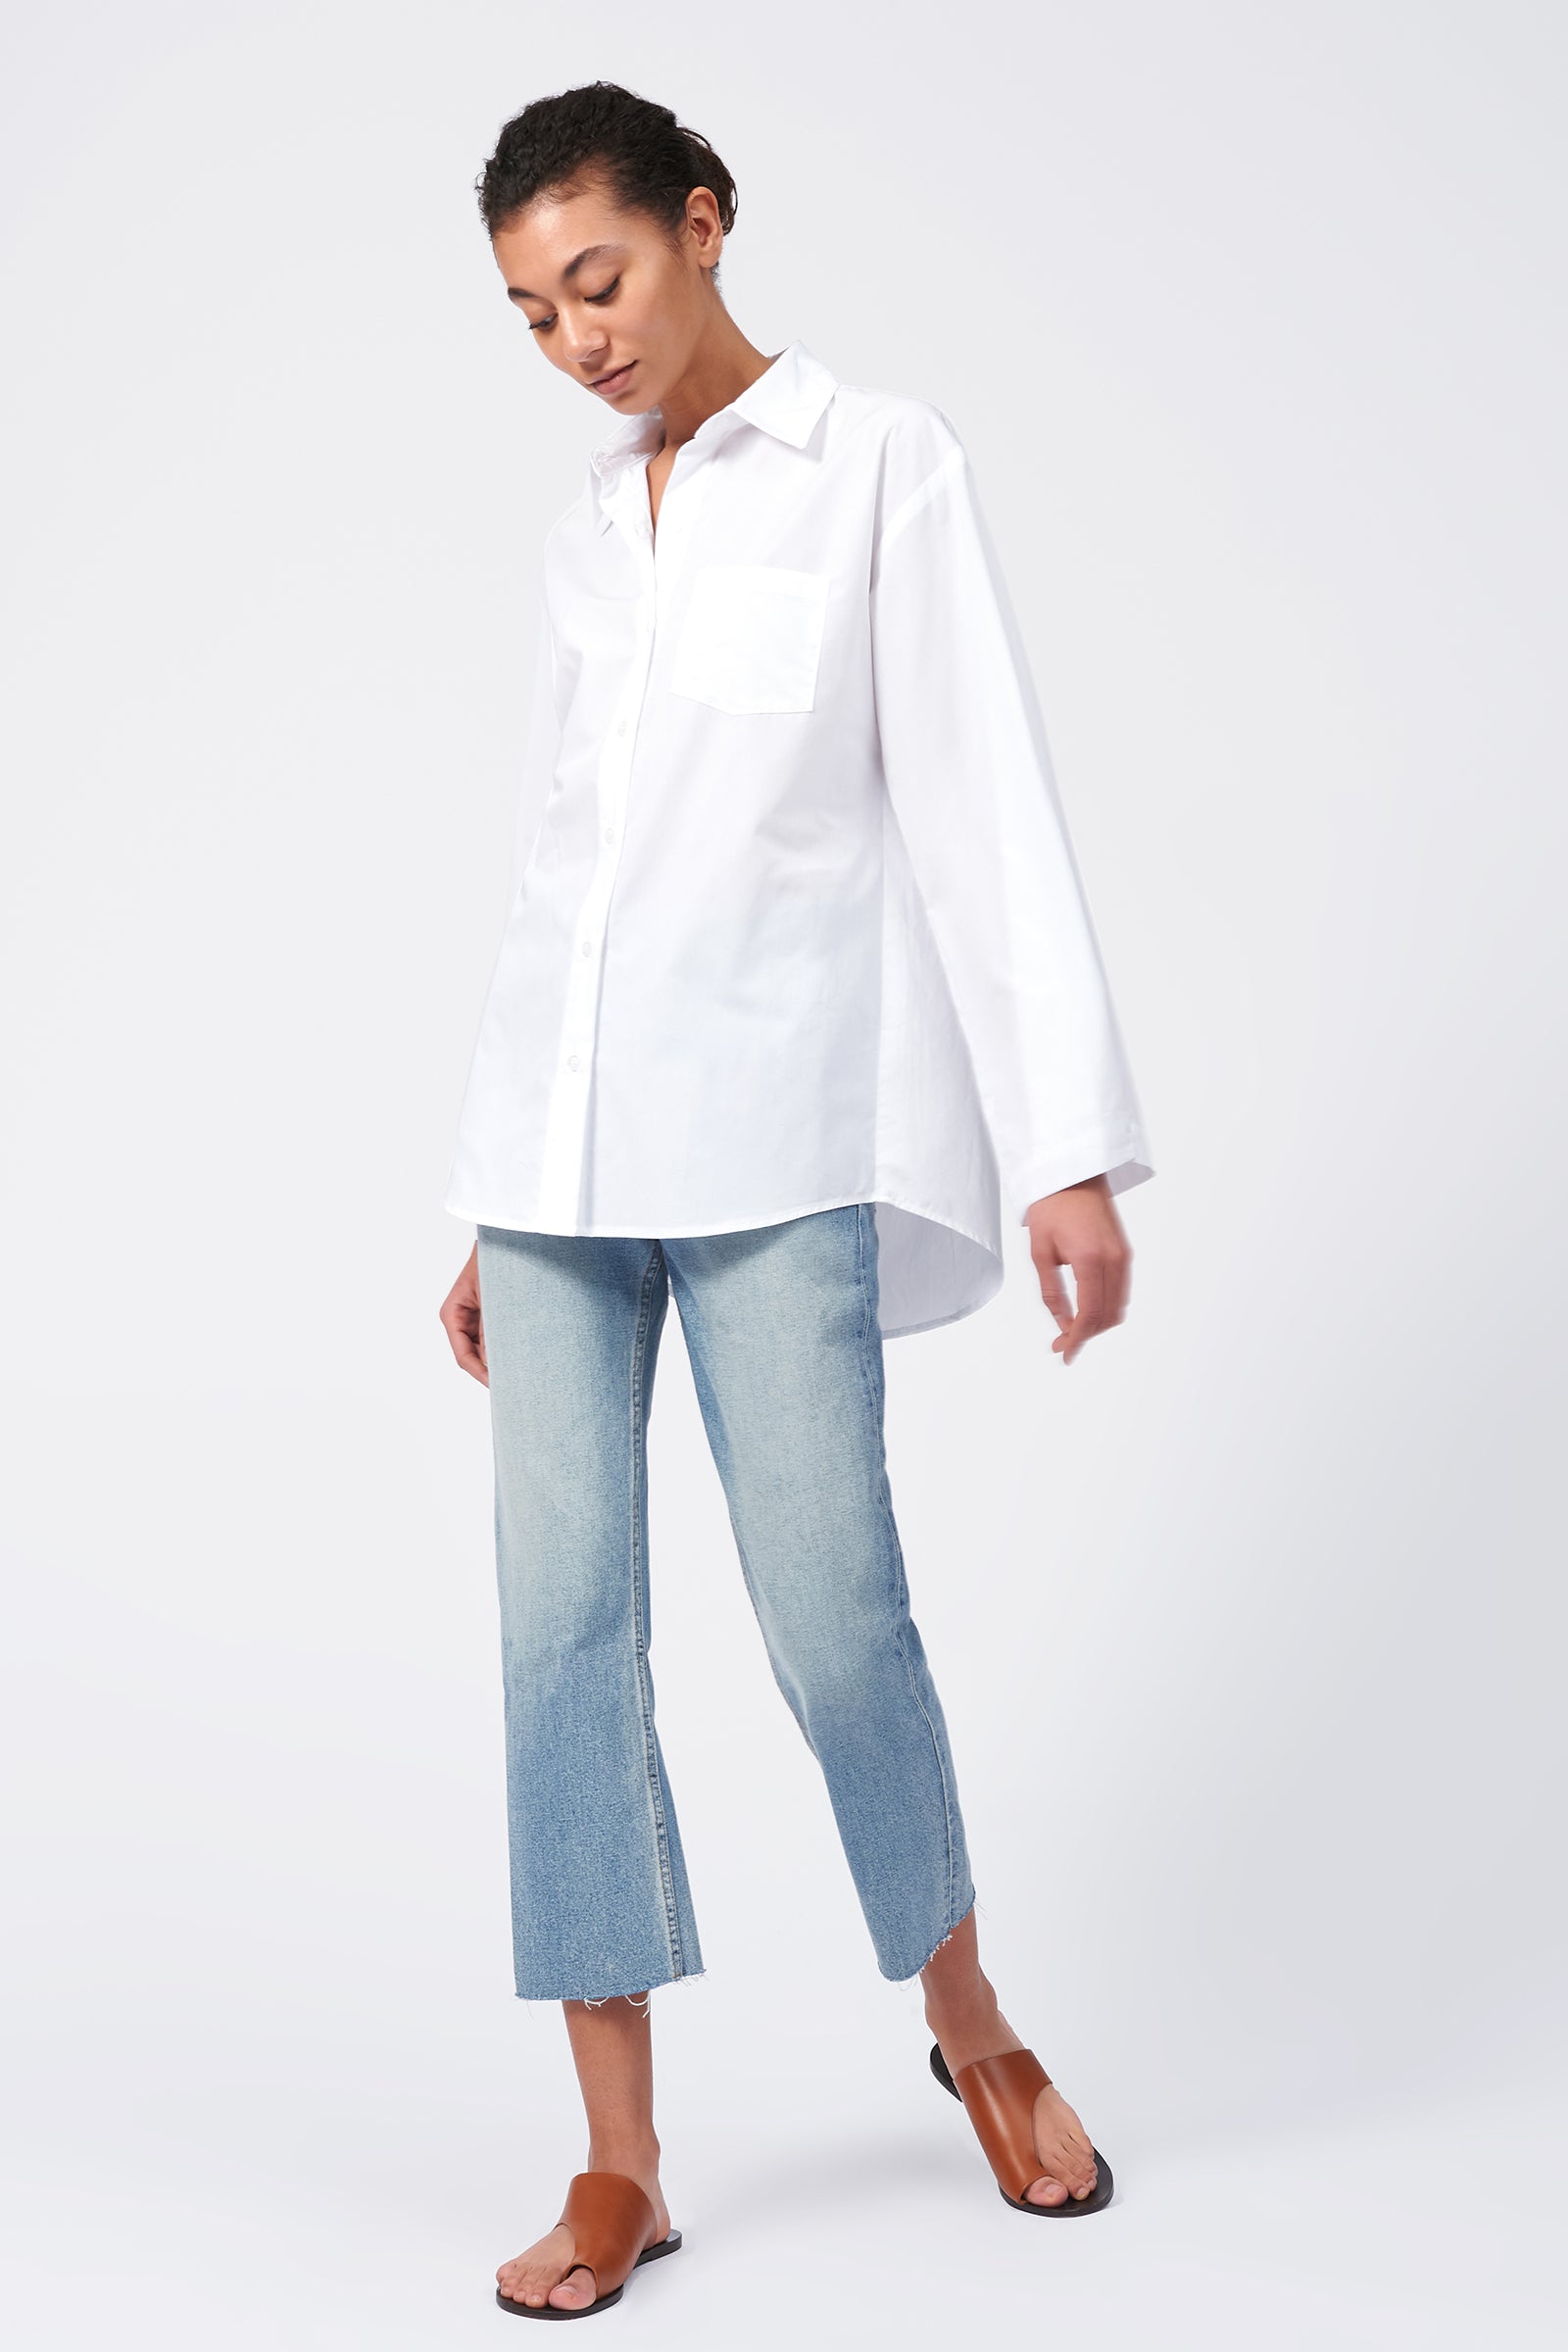 Kal Rieman Wide Sleeve Shirt in White Poplin on Model Front Side View